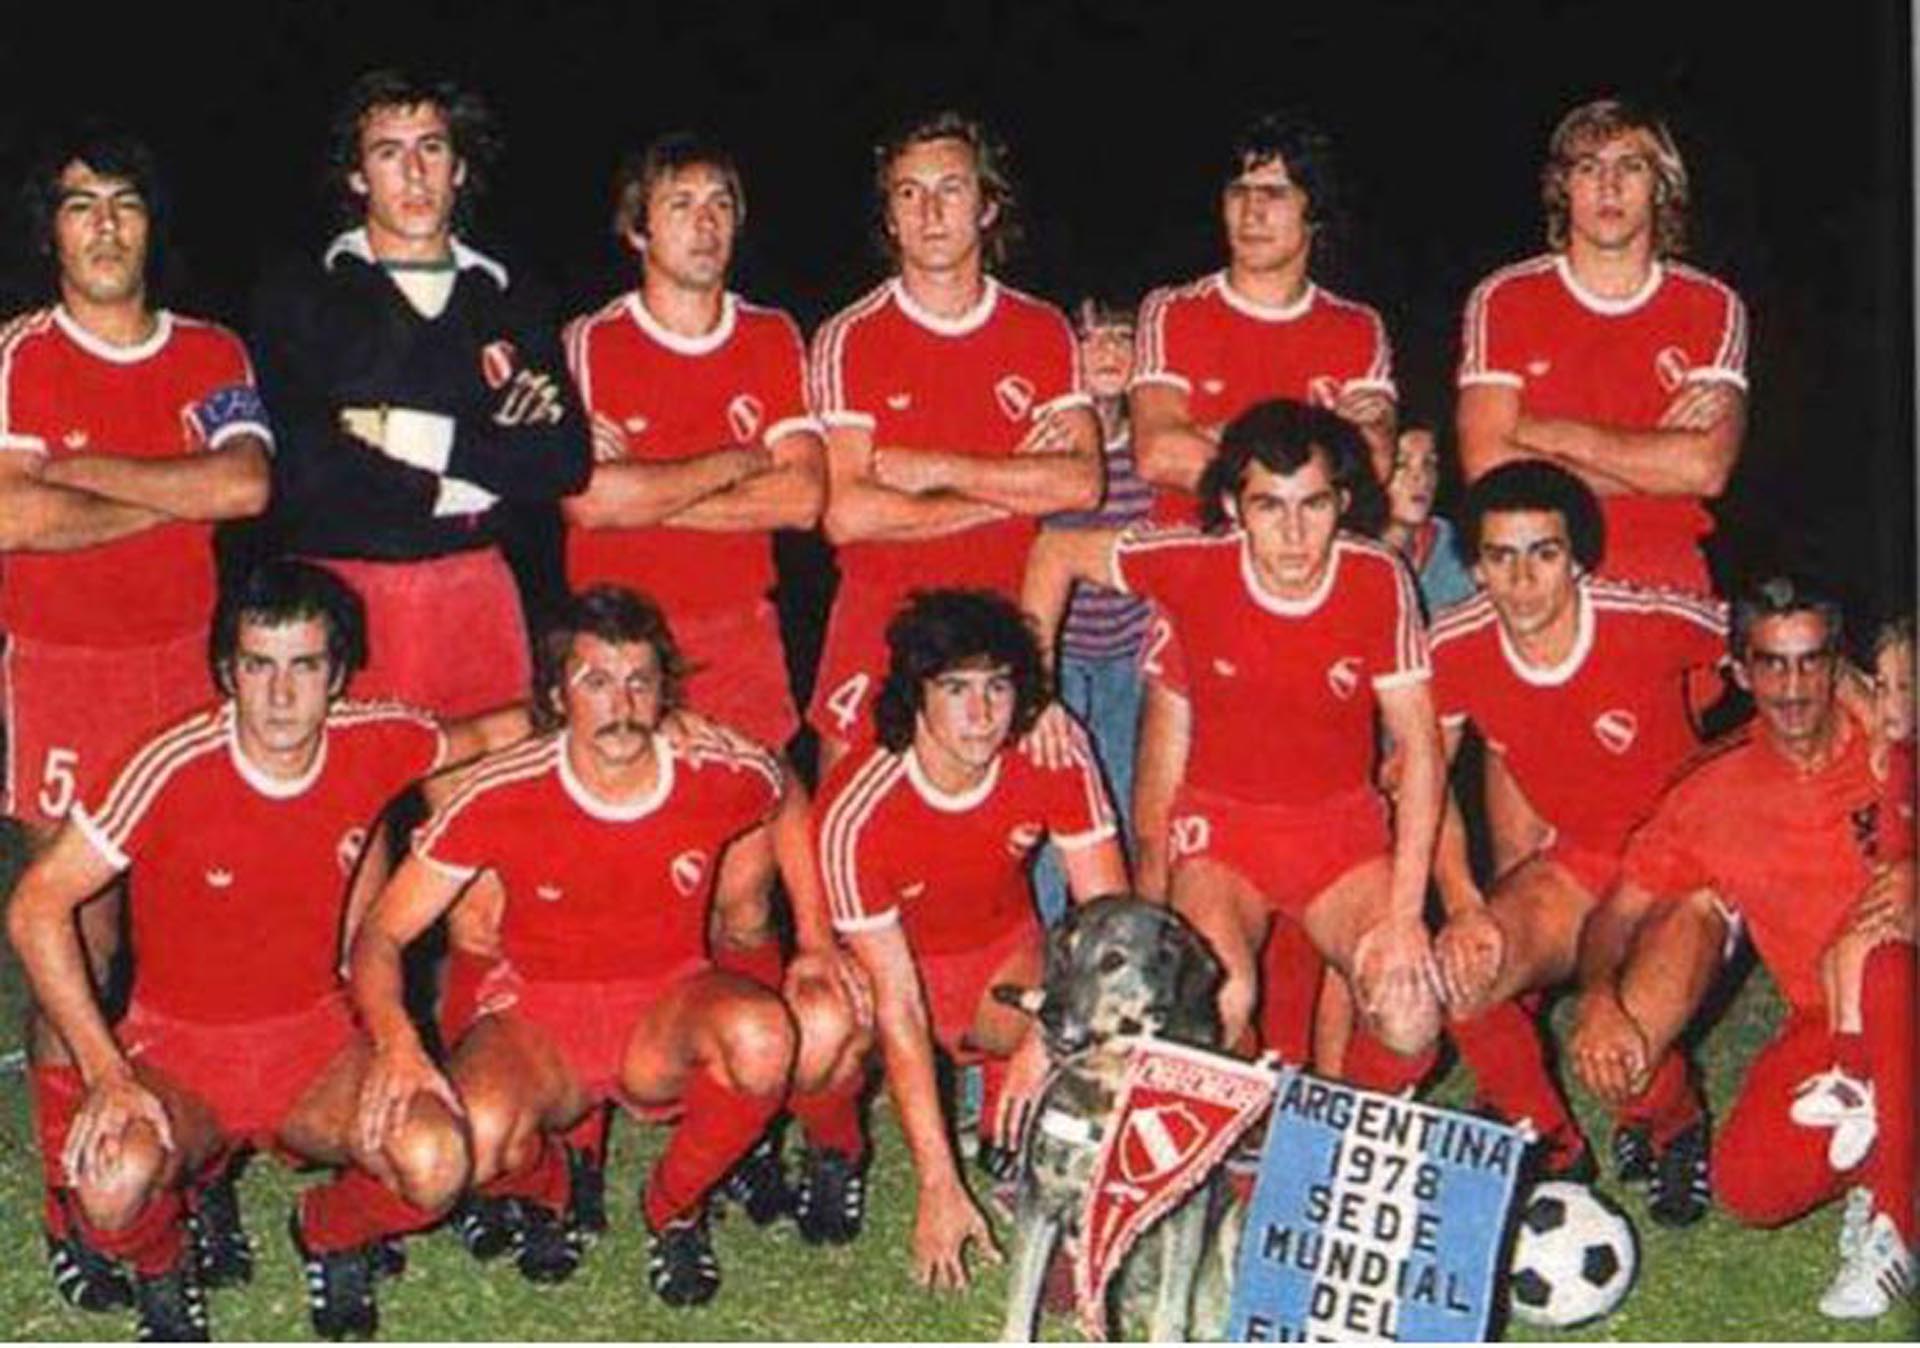 Equipo de Independiente con un banderín de promoción del Mundial 1978. Arriba: Galván, Rigante, Osvaldo Pérez, Rubén Pagnanini, Hugo Villaverde, Enzo Trossero. Abajo: Arrieta, Larrosa, Outes, Bochini y Magallanes. 